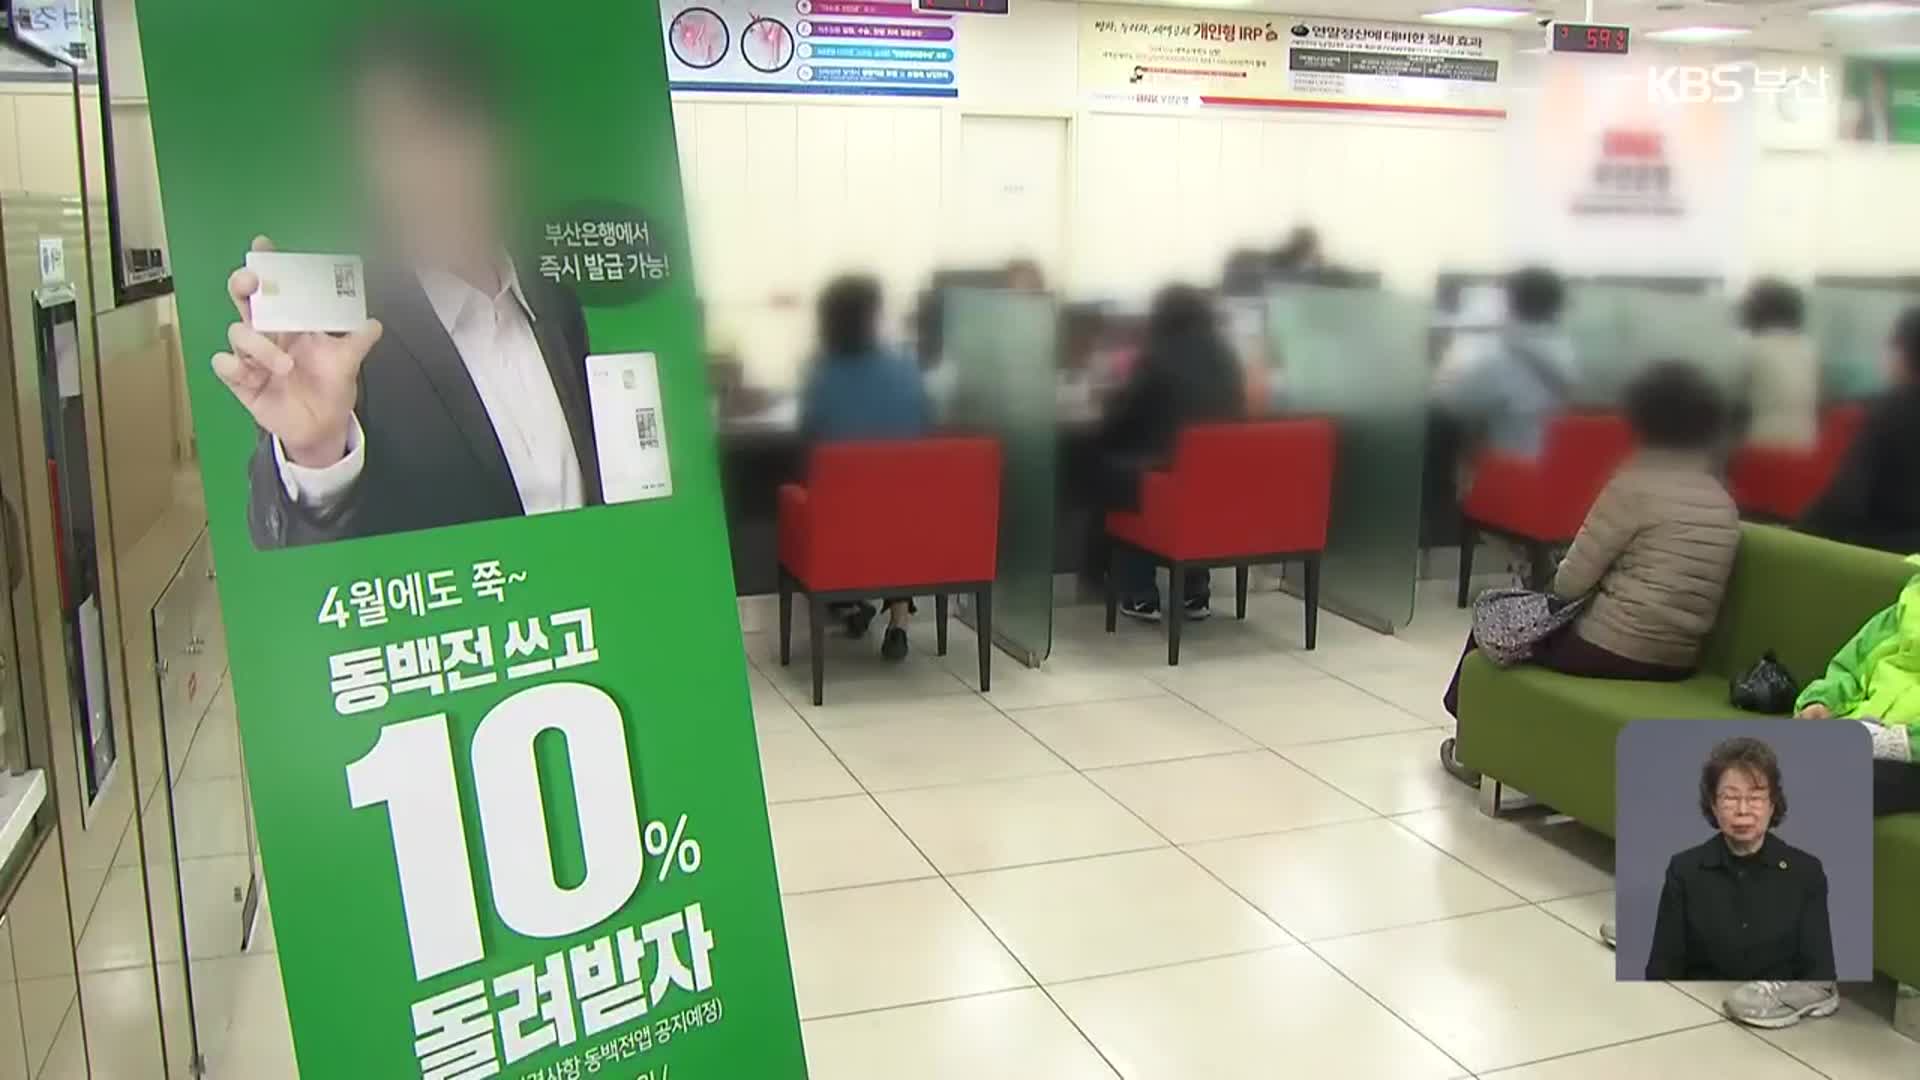 불리한 항목 삭제?…동백전 새 운영사 선정 또 ‘논란’